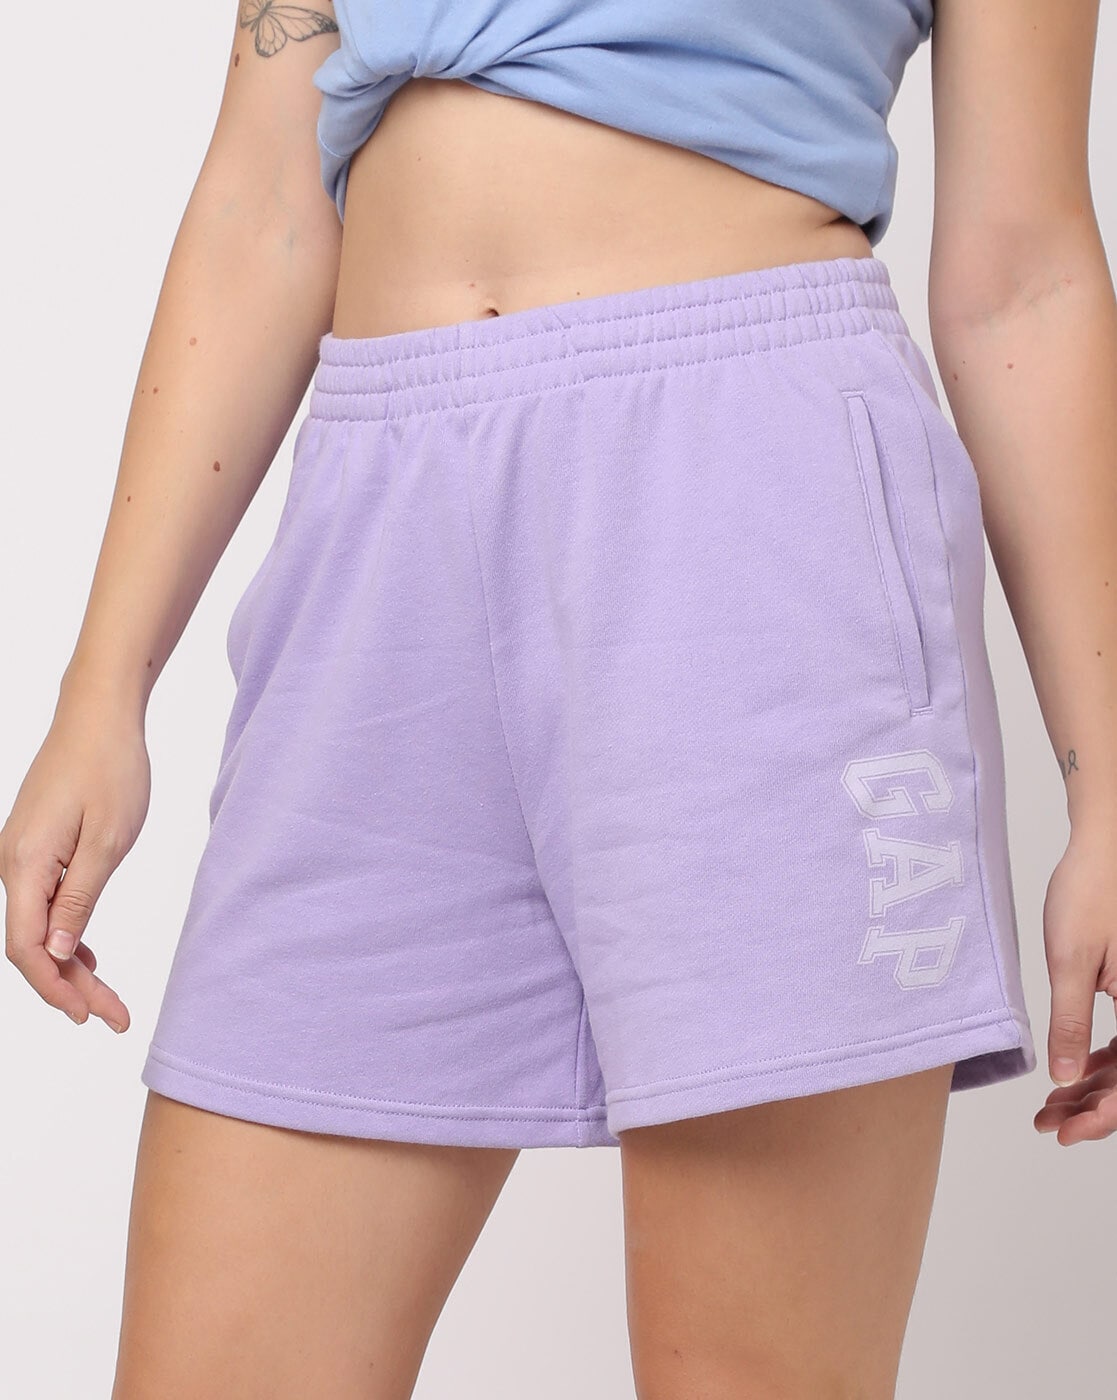 Buy Purple Shorts for Women by GAP Online